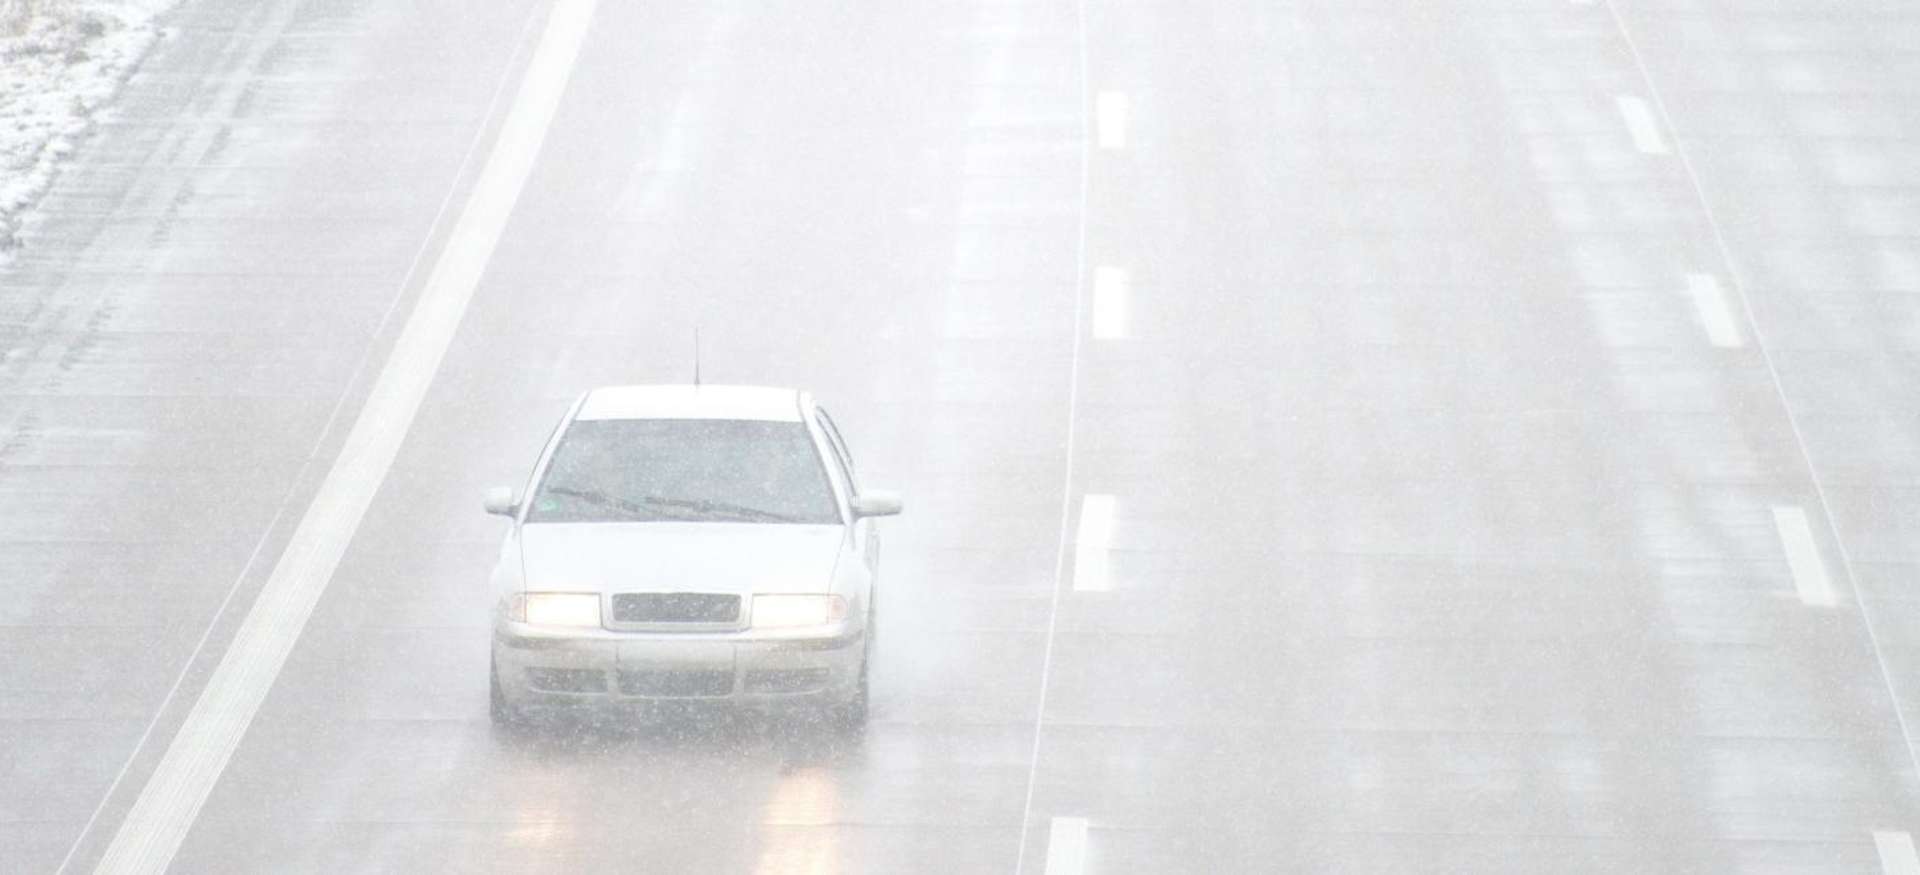 Comment conduire par temps de brouillard sur autoroute ?